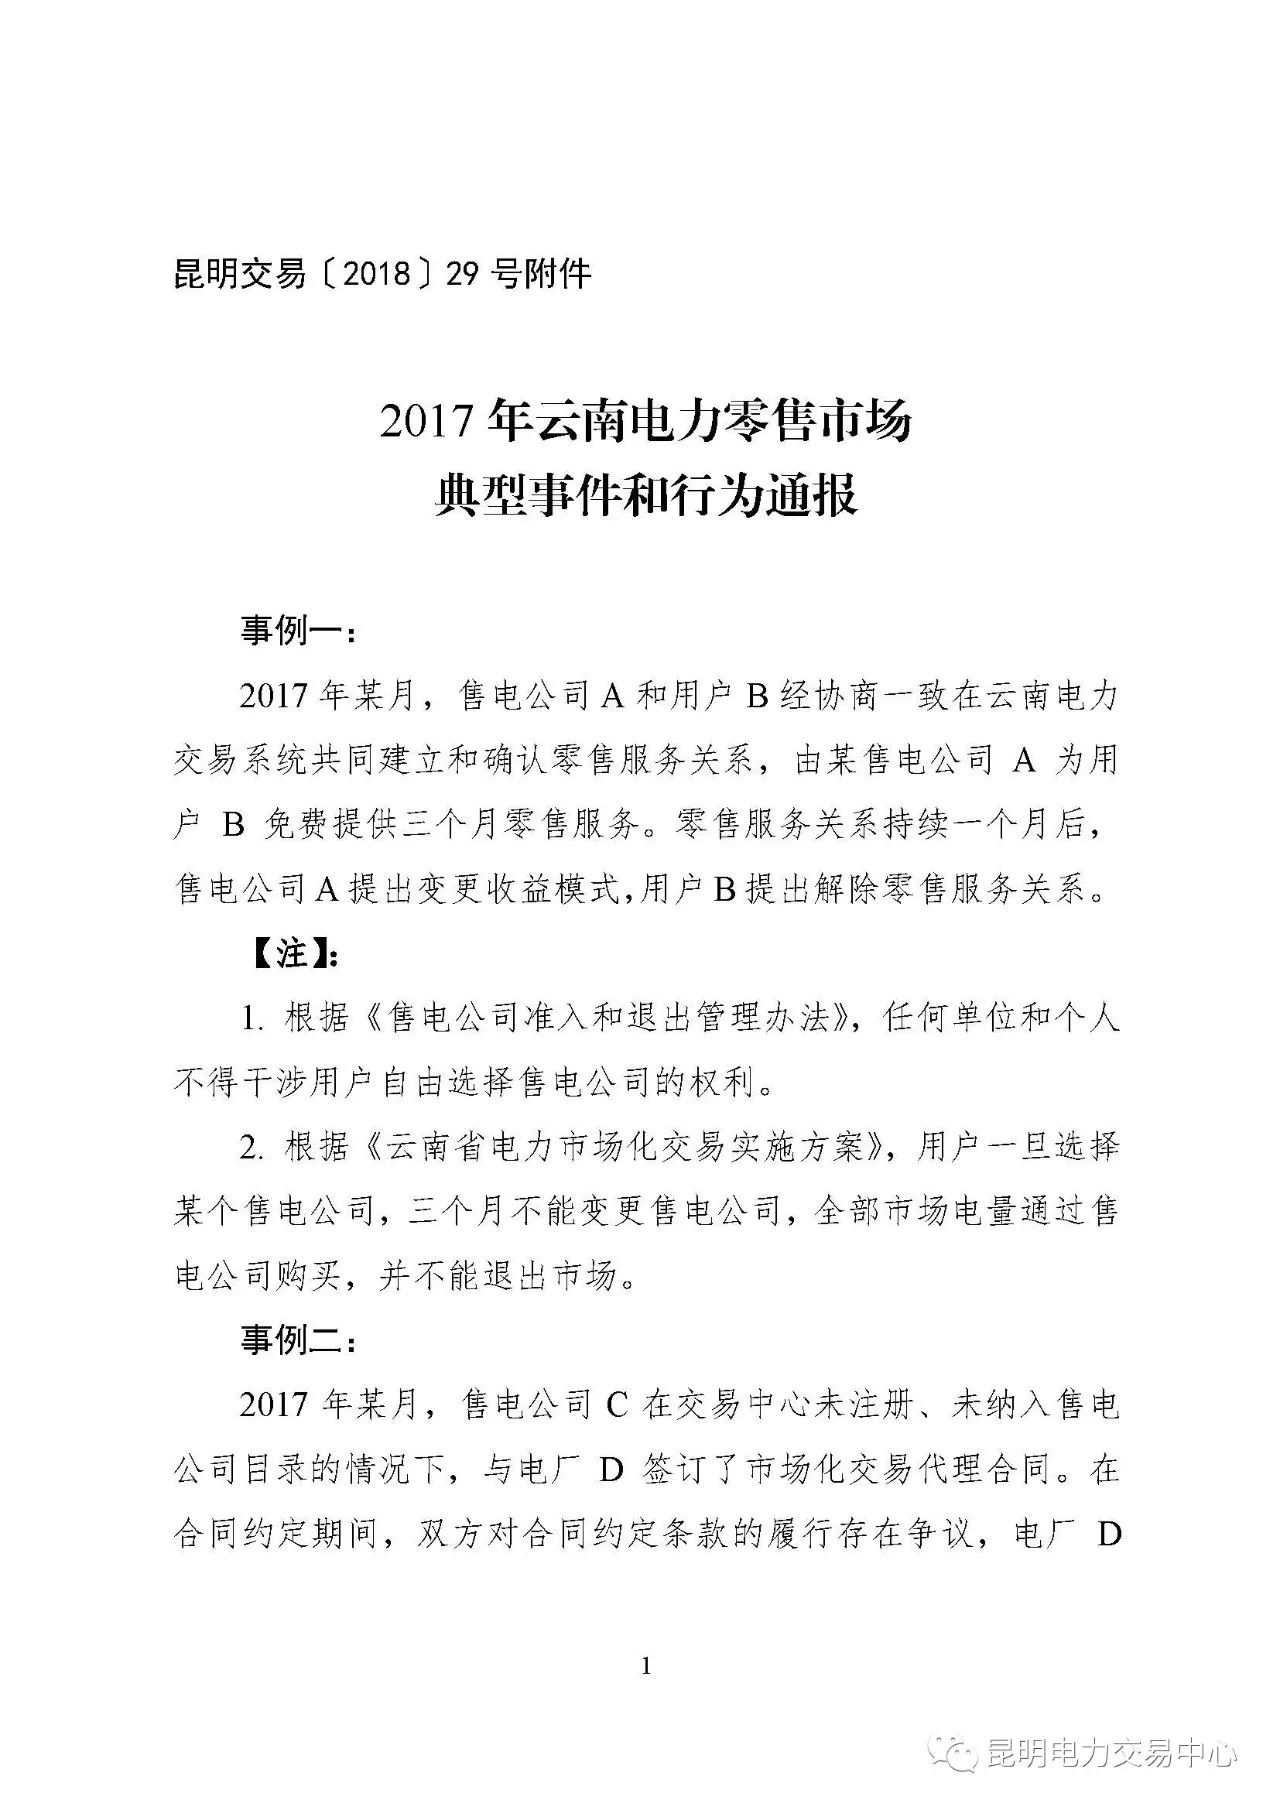 2017年云南电力零售市场典型事件和行为通报